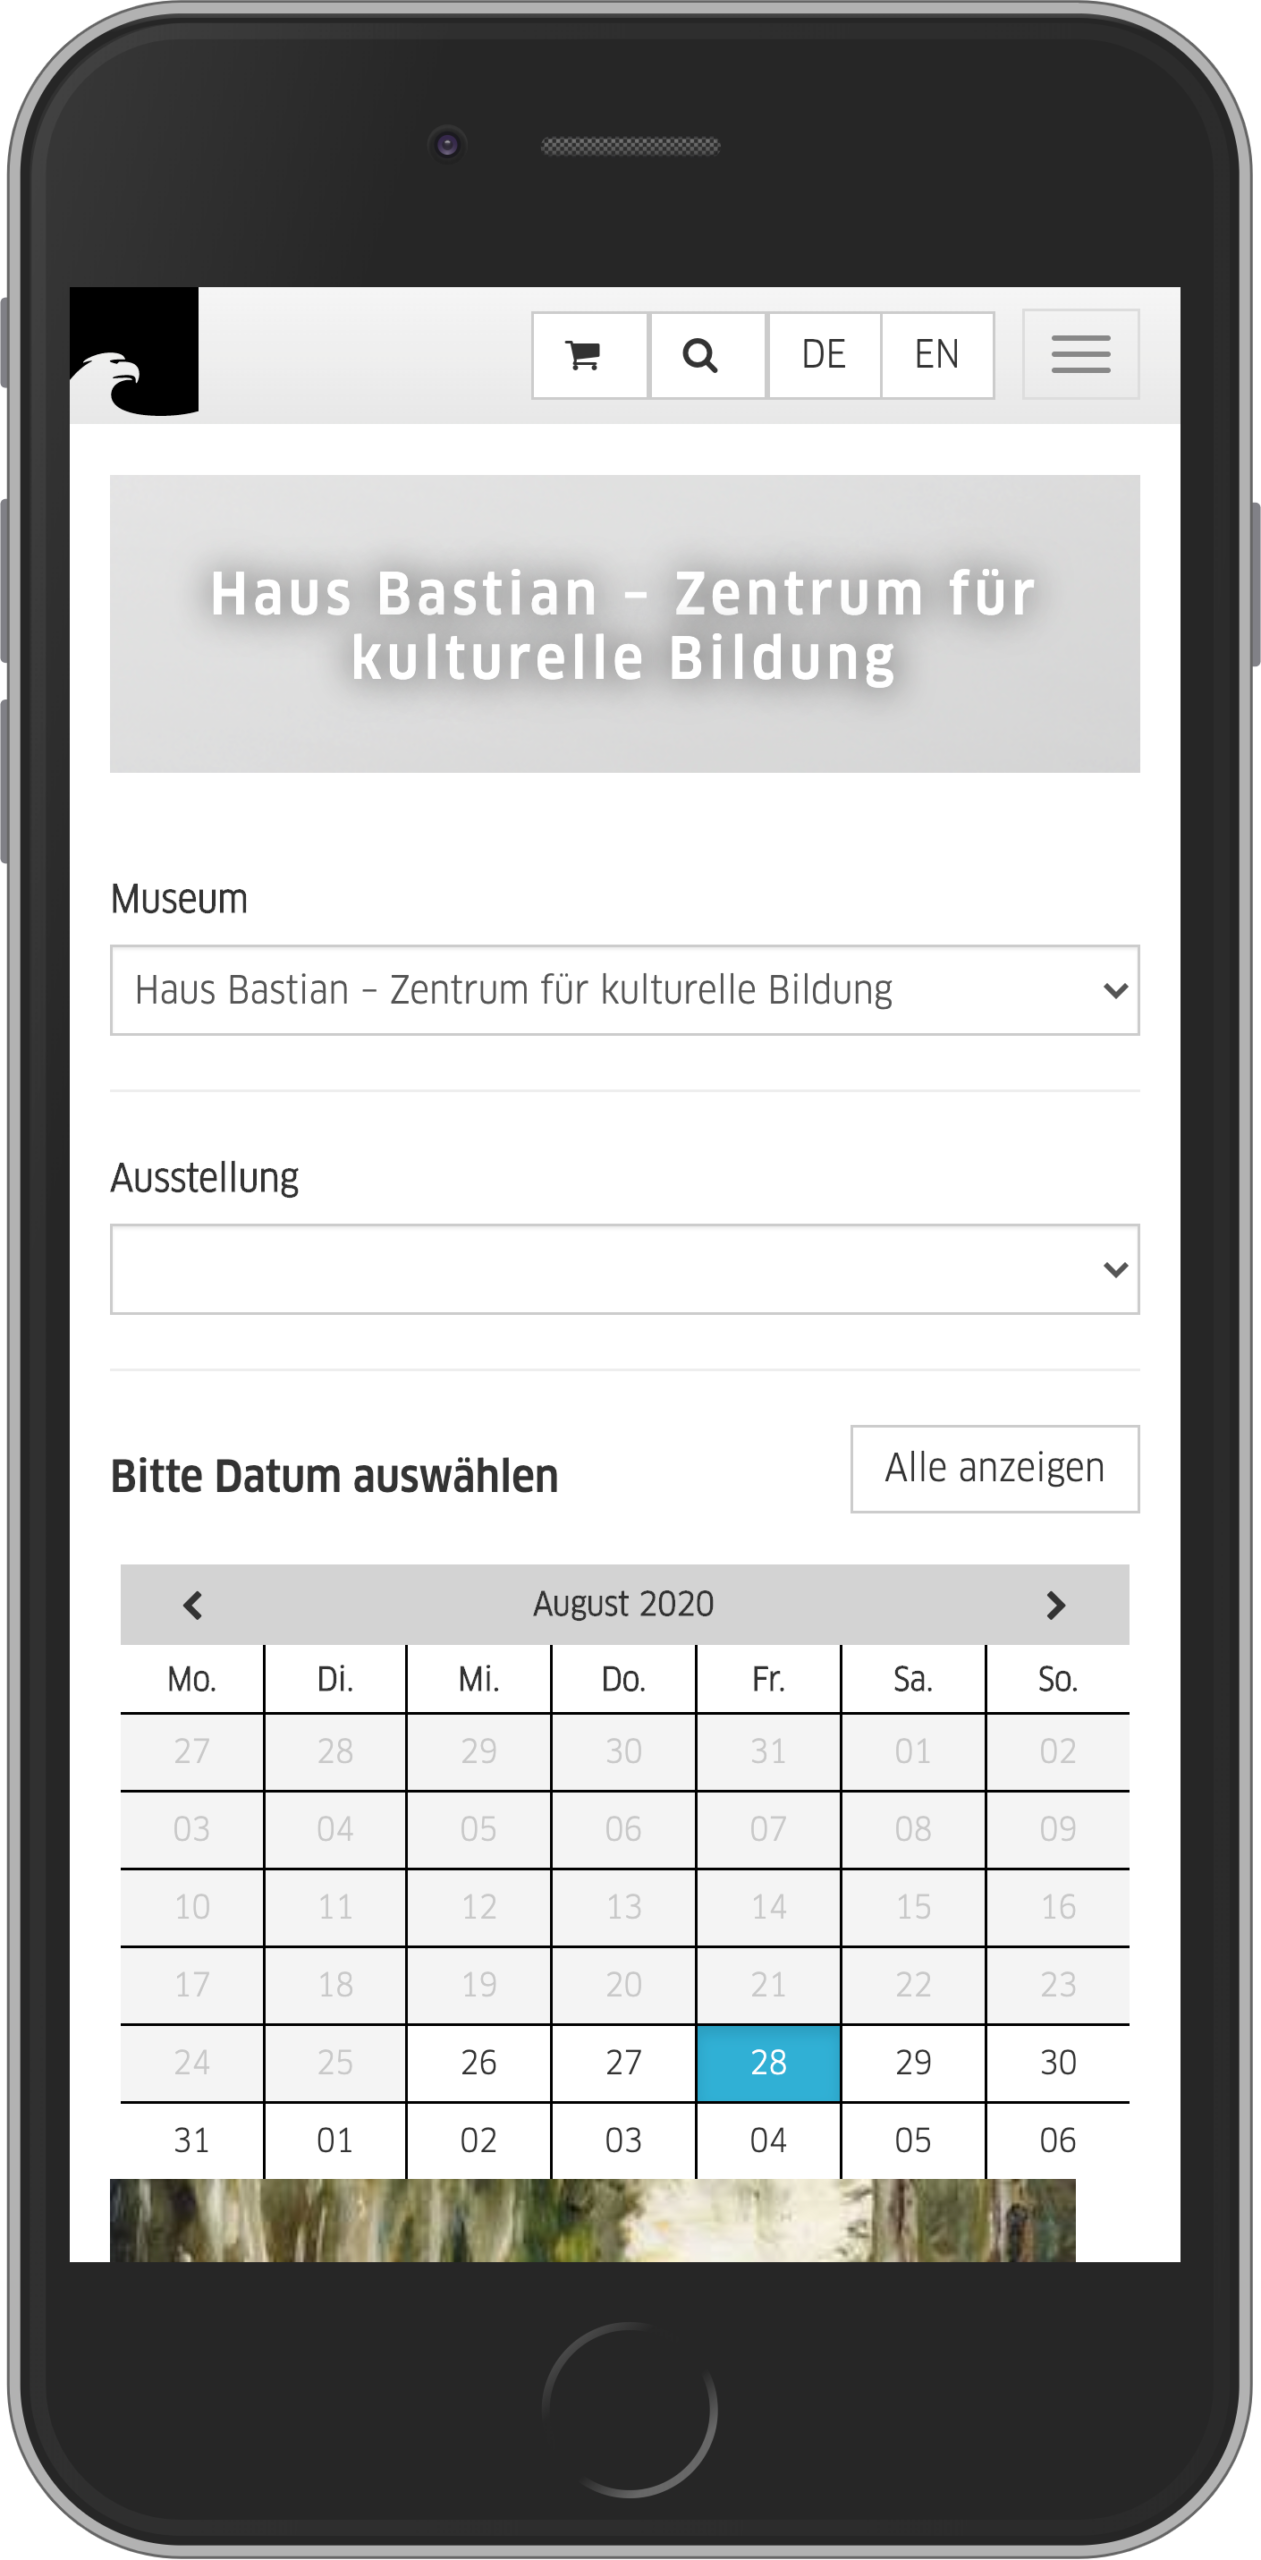 Mobile Ansicht der Veranstaltungssuche im Kaufprozesses für Veranstaltungen im Online-Shop der Staatlichen Museen zu Berlin